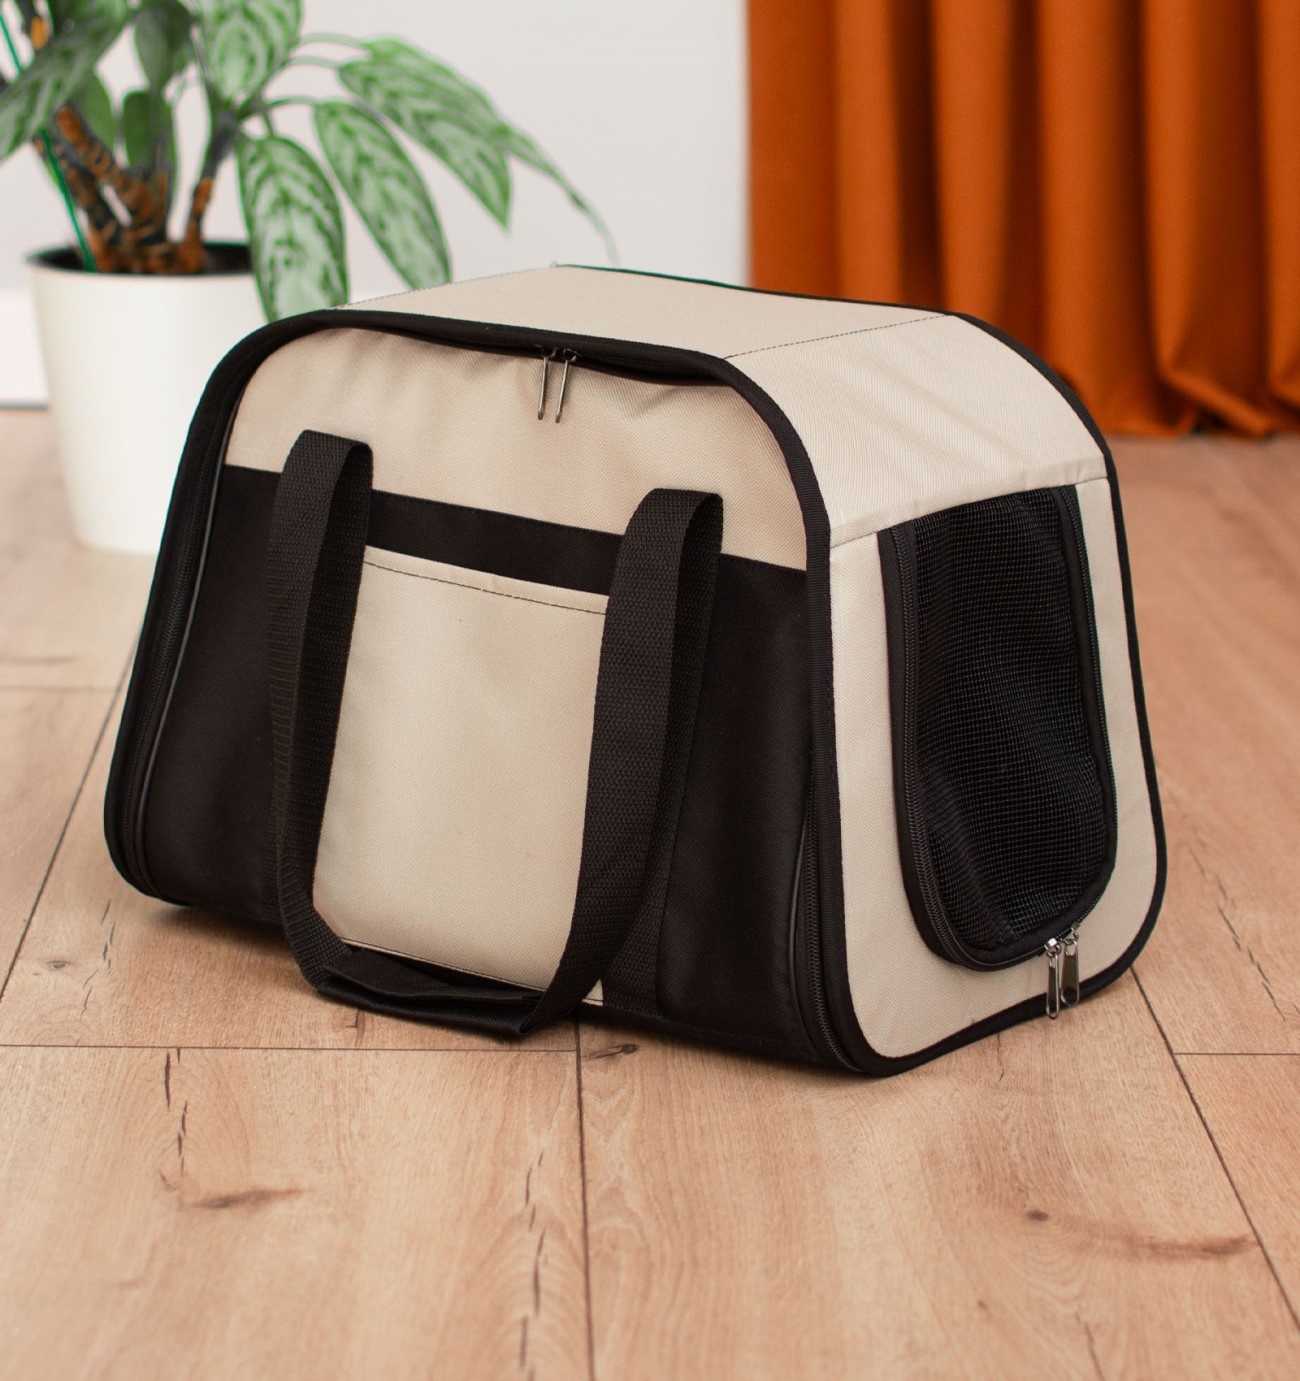 PETSHOP транспортировка PETSHOP транспортировка сумка-переноска Стив с карманом 42х25х27см (коричневый)